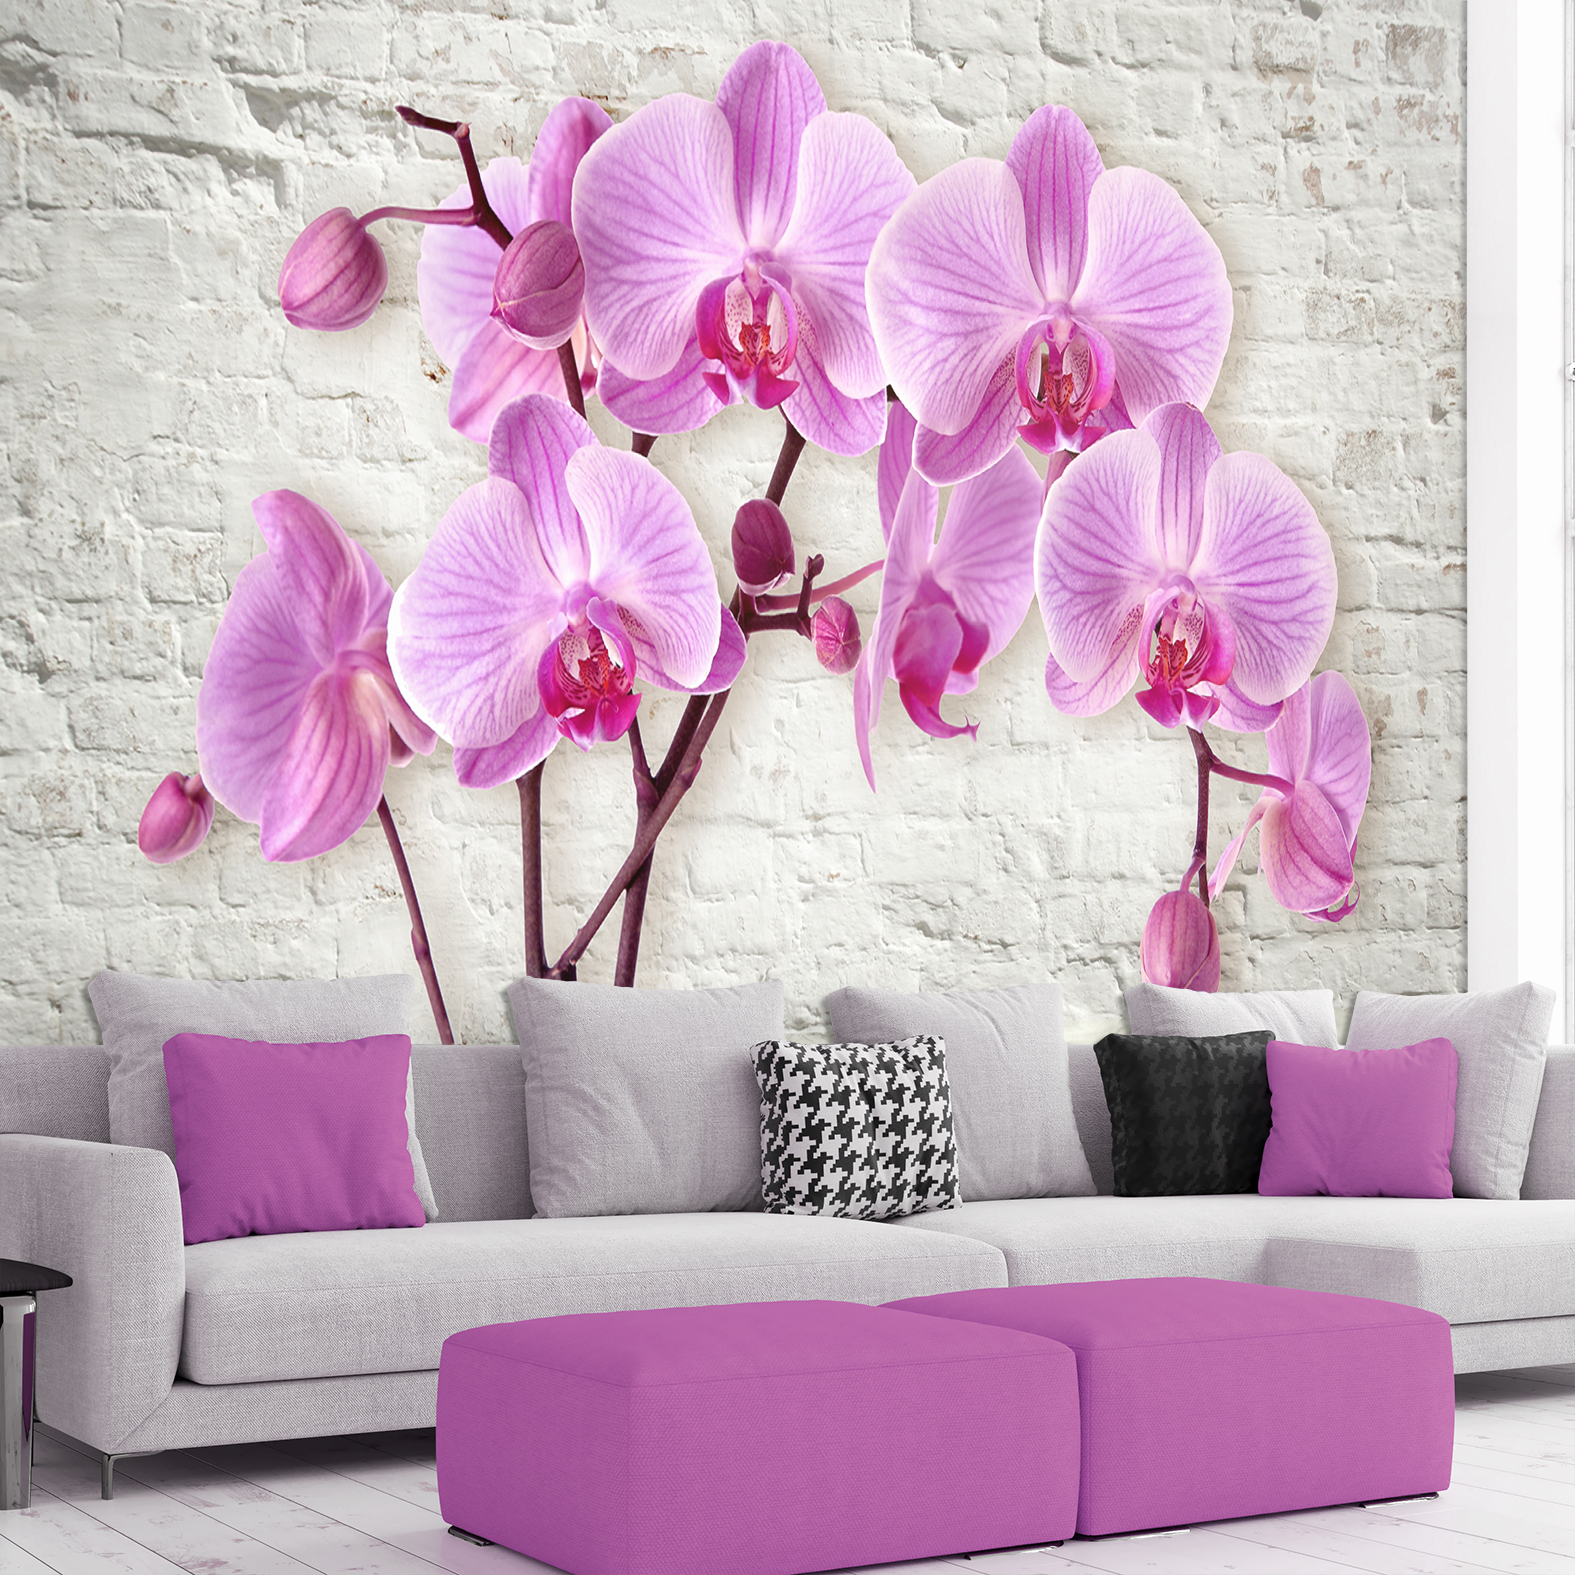 bmc опора для орхидеи рубиновый 600мм Фотообои Photostena 3D орхидеи на фоне кирпичной стены 4,08 x 2,8 м